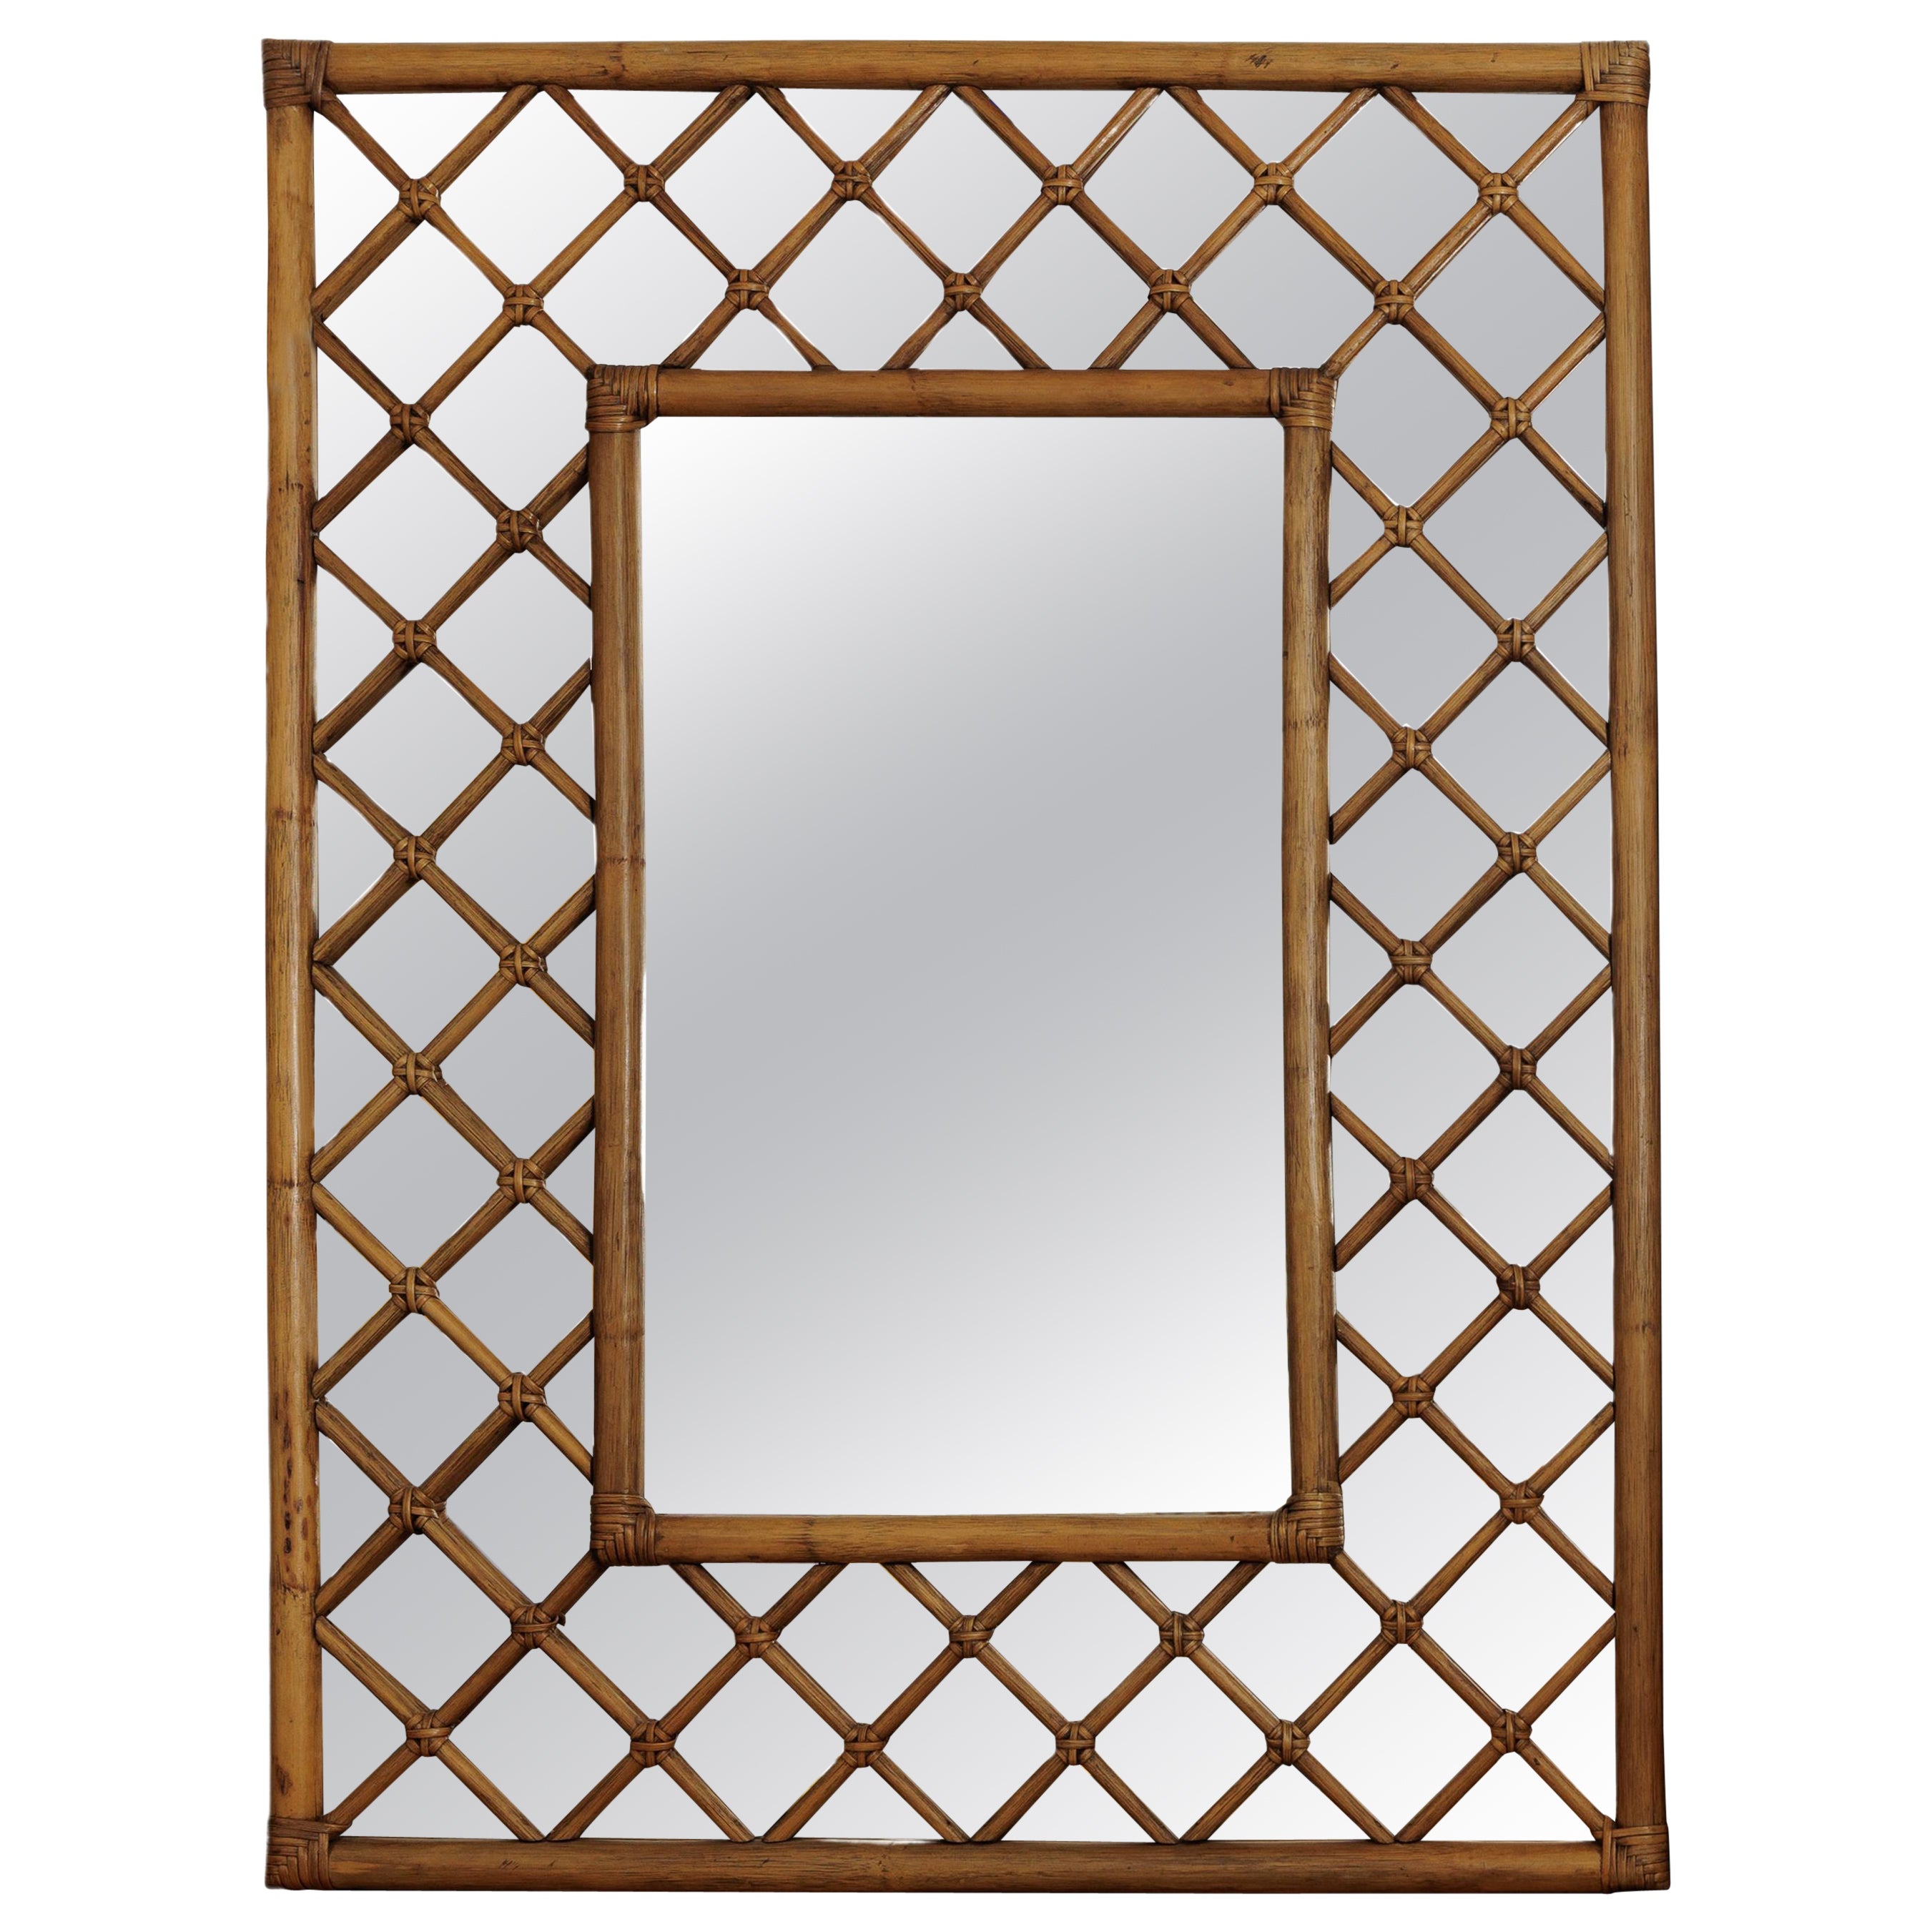 Bamboo Woven Lattice Mirror